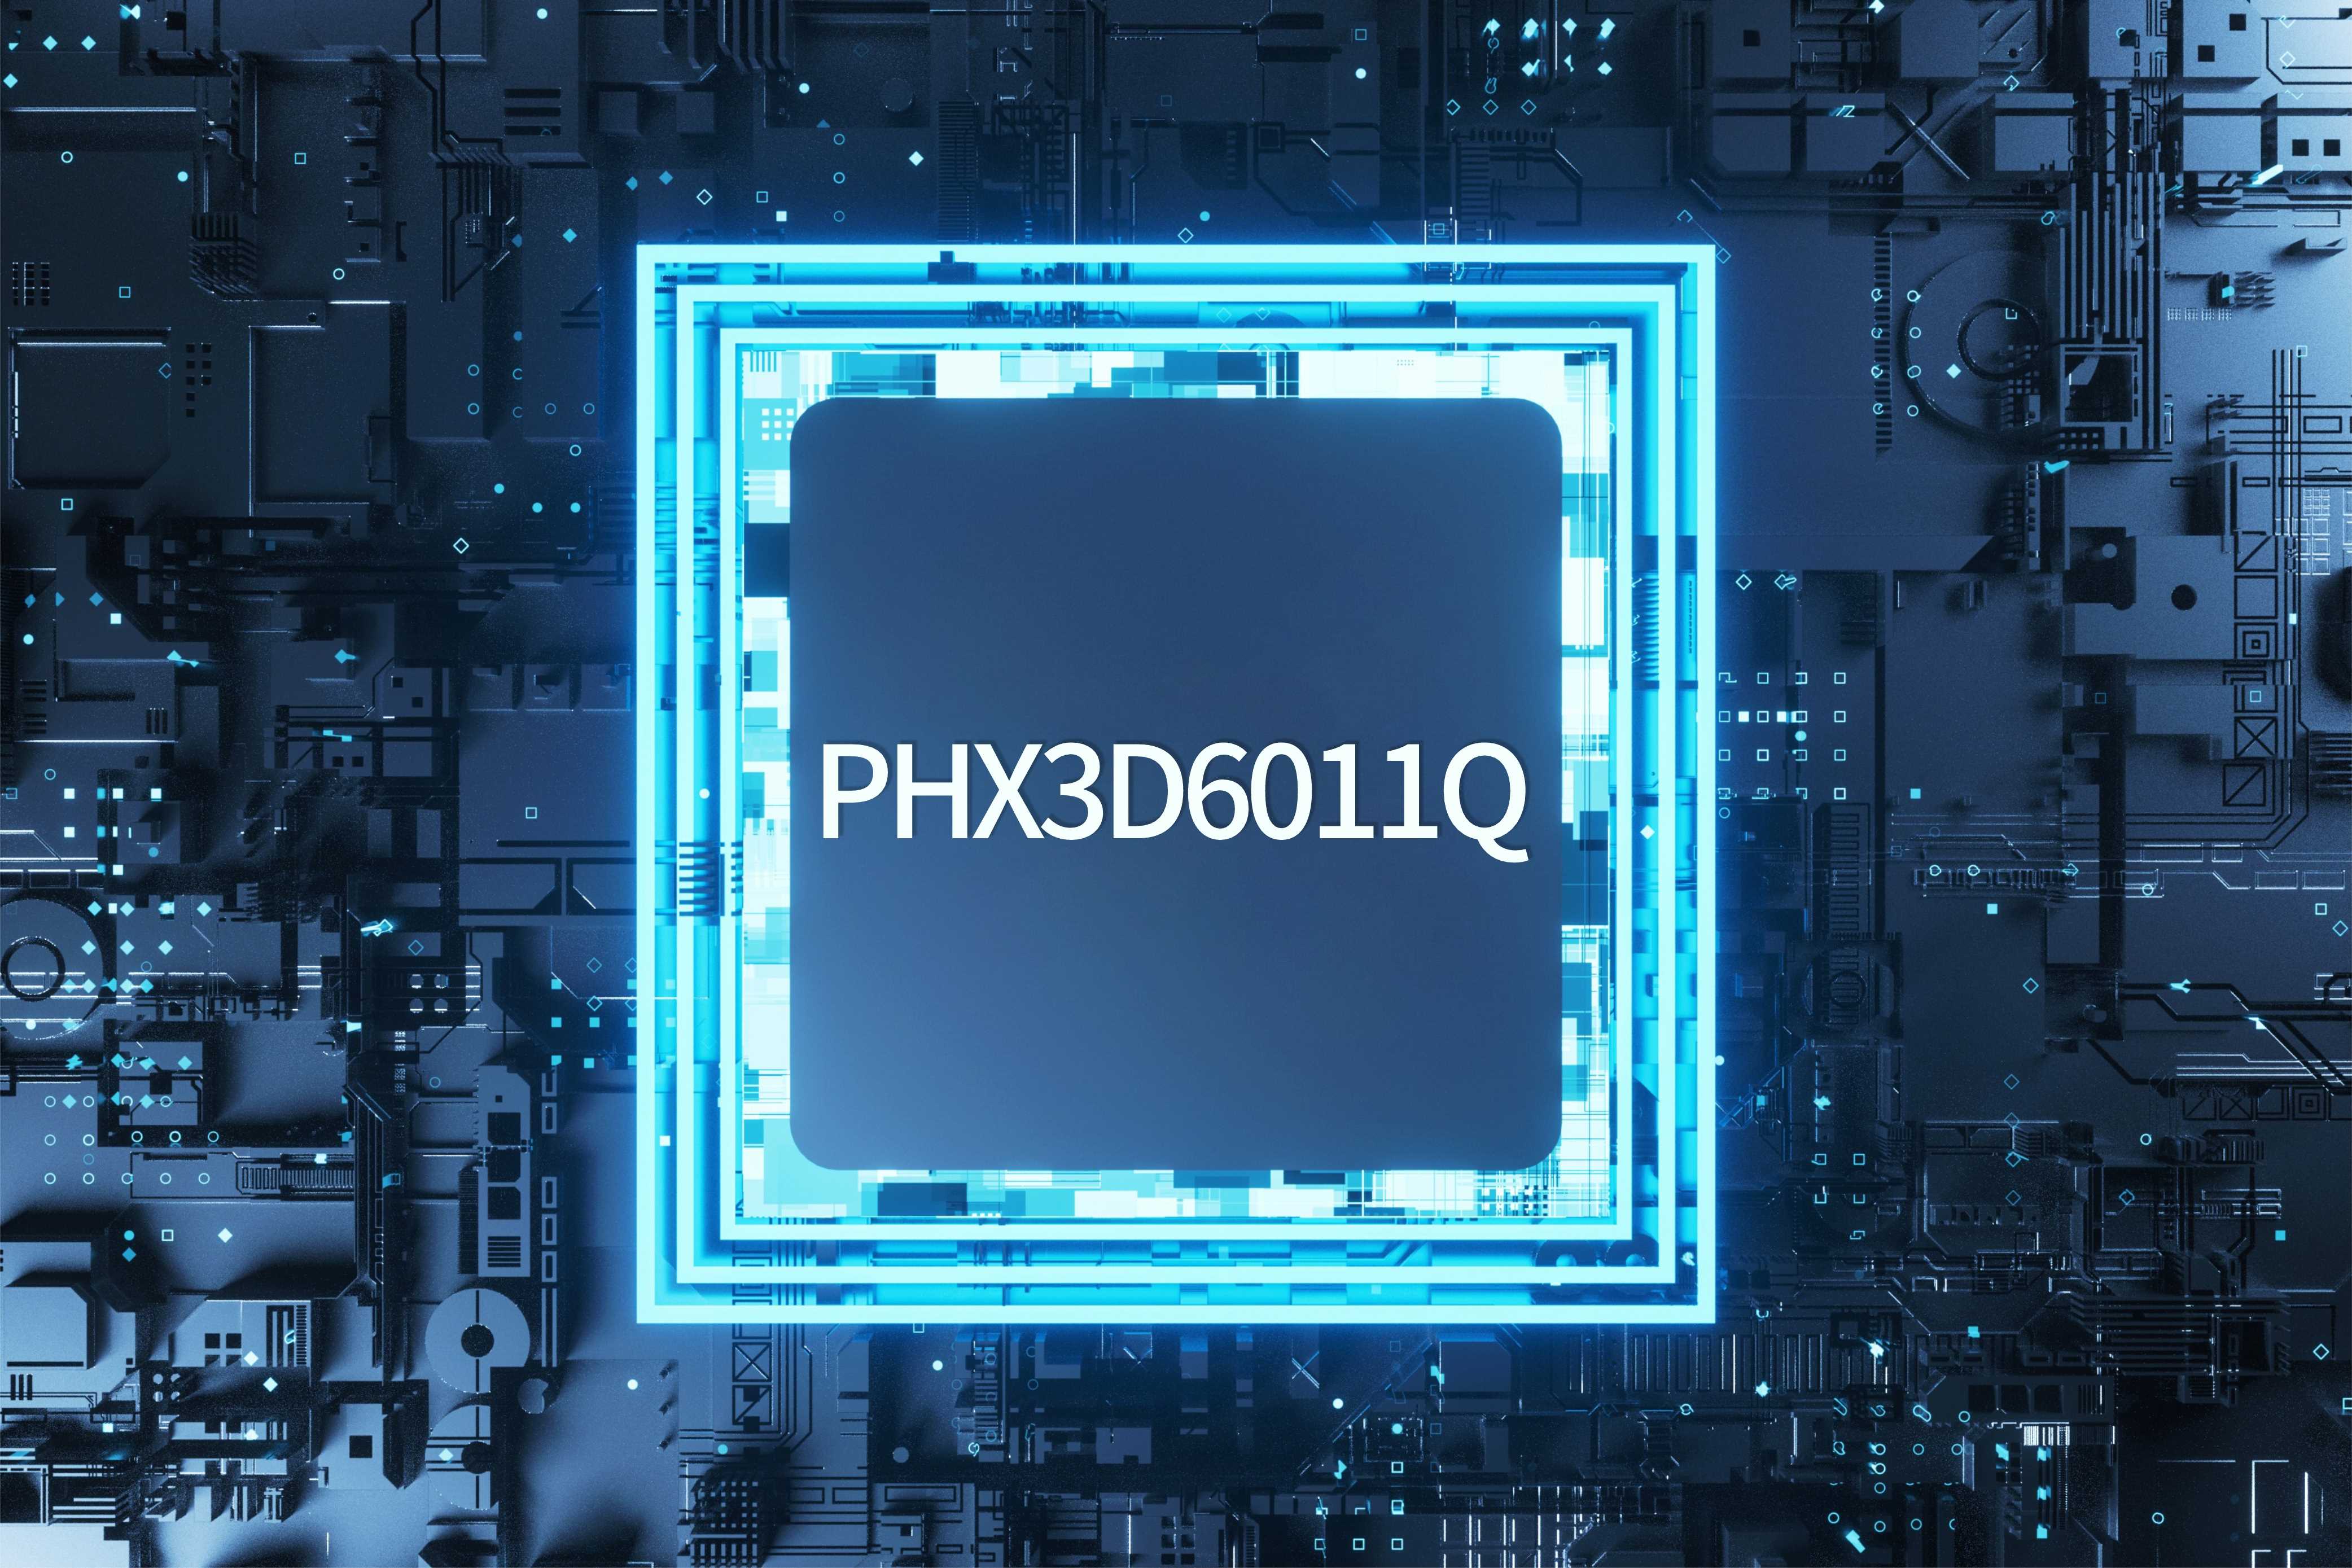 PHX3D6011Q